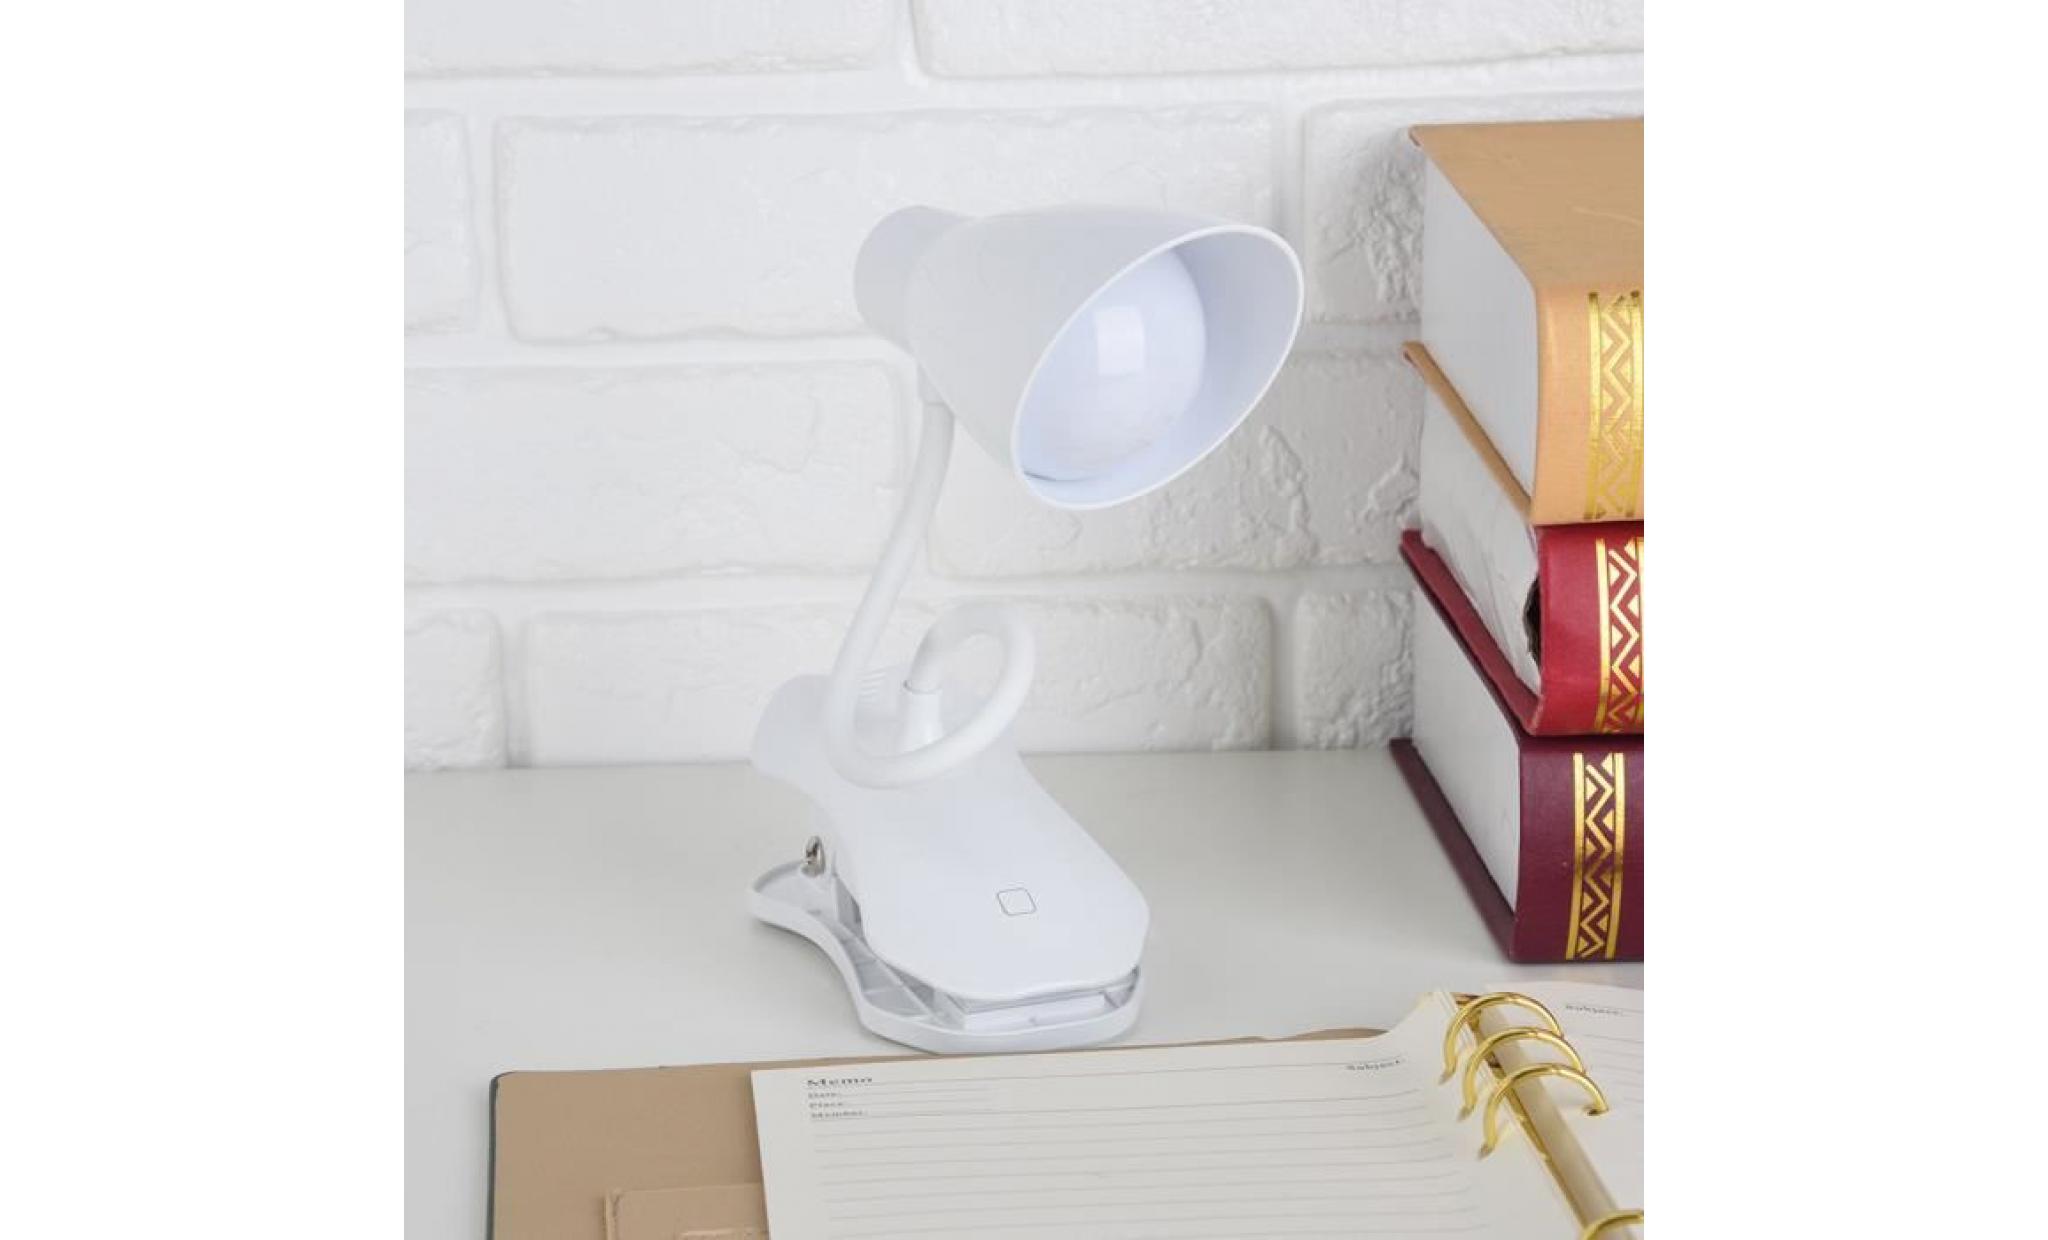 lampe de lecture usb rechargeable light portable avec protection des yeux 379 pas cher